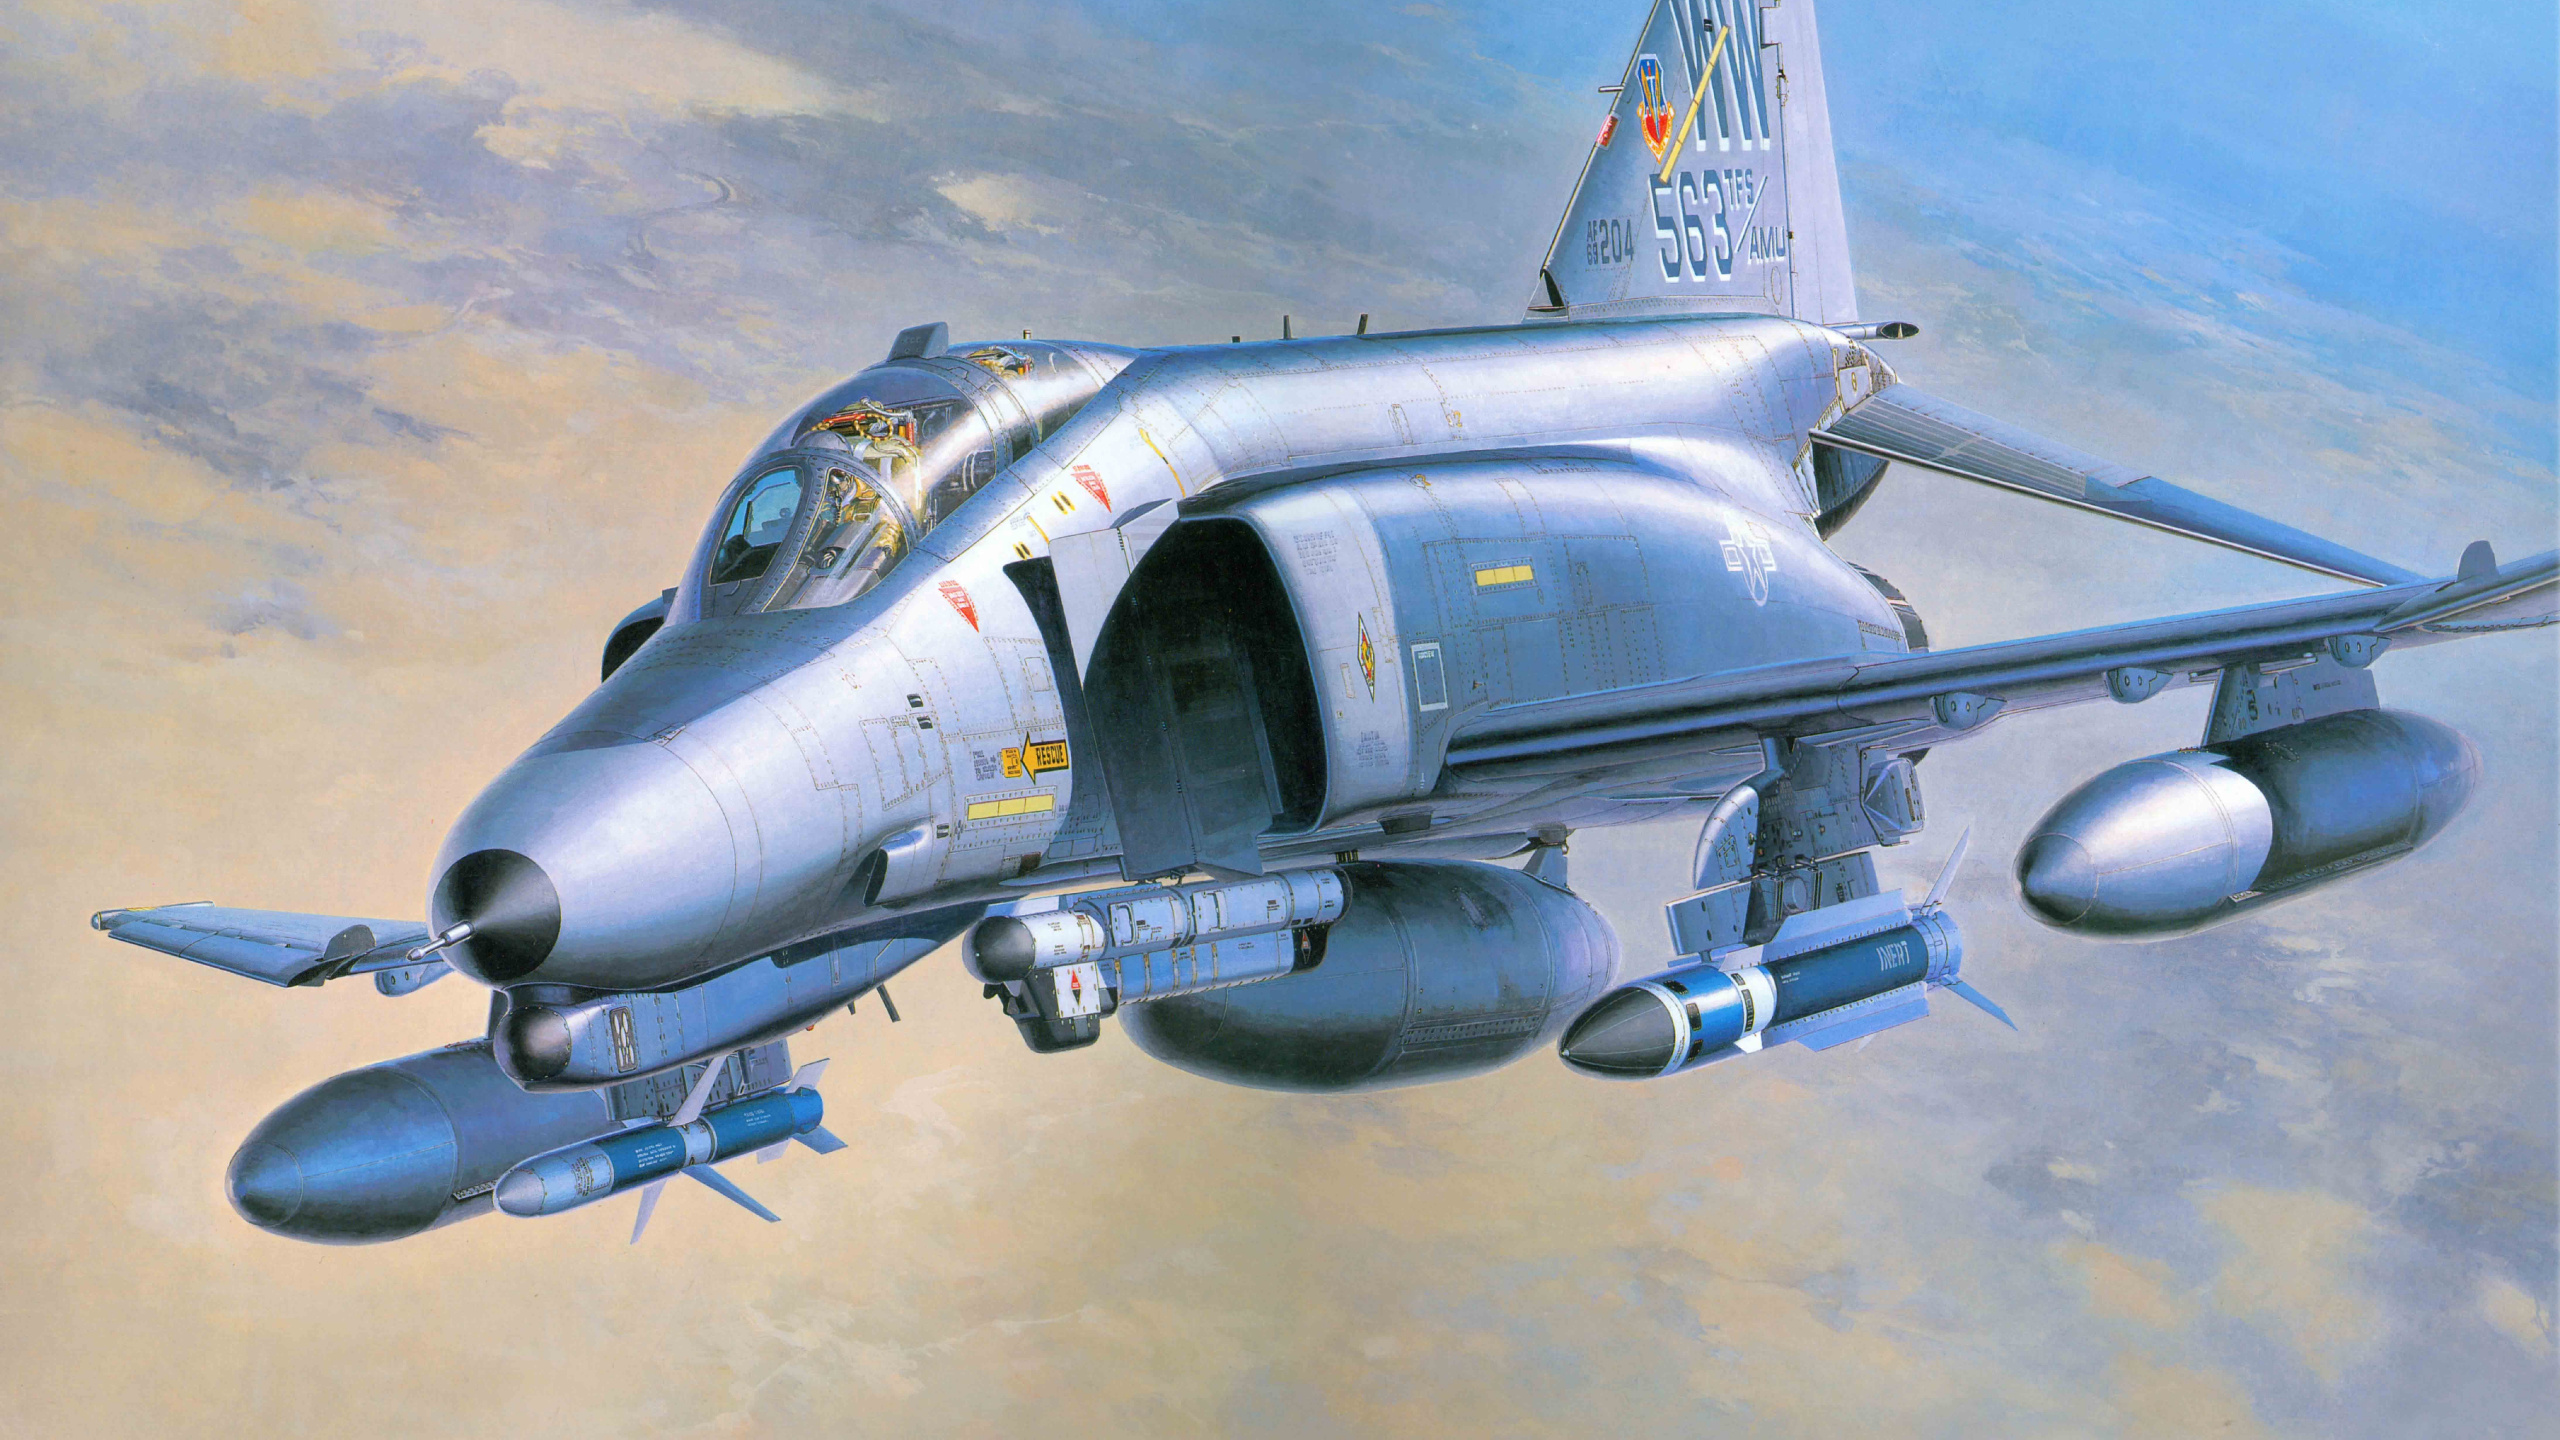 麦克道格拉斯F-4幽灵II, 长谷川公司, 喷气式飞机, 航空, 军用飞机 壁纸 2560x1440 允许